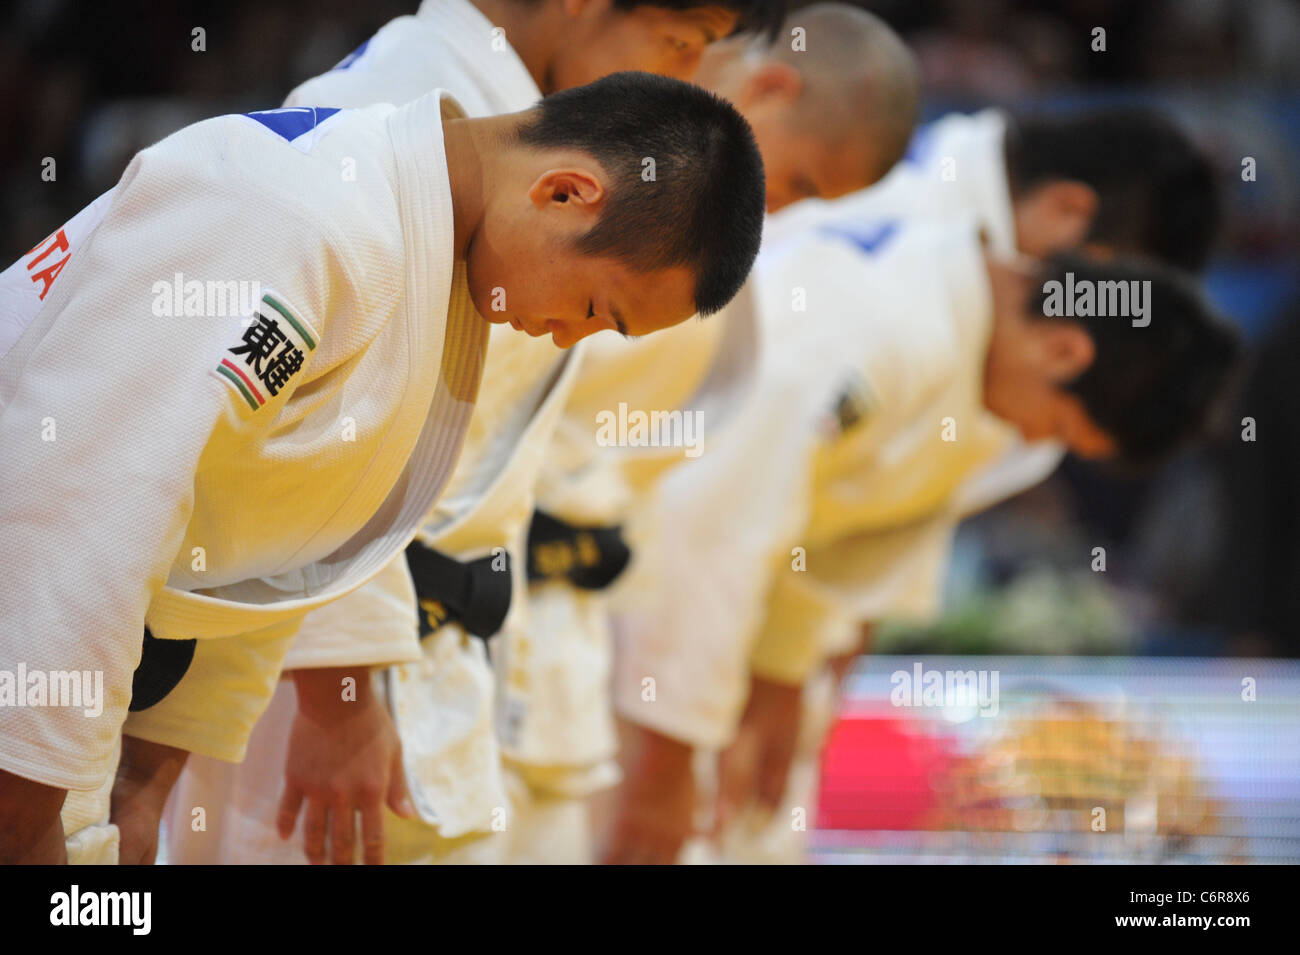 Le Japon (JPN) line-up pour le championnat du monde de judo Paris 2011, l'équipe masculine des compétitions. Banque D'Images